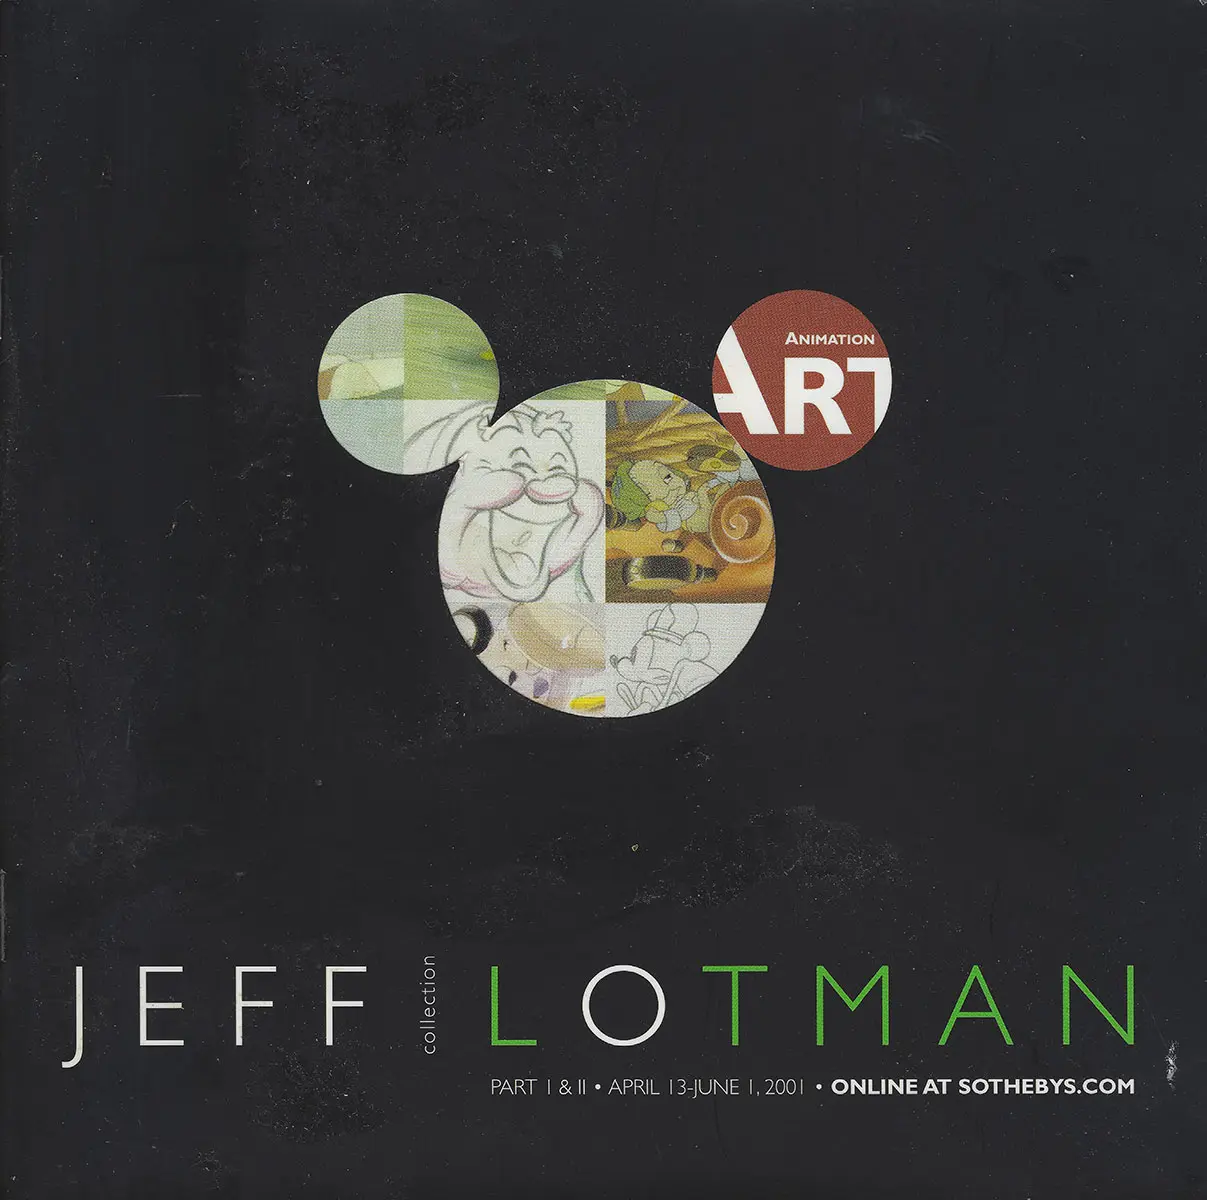 April-13-June 1, 2001 Sothebys.com Jeff Lotman Animation Auction Catalogue